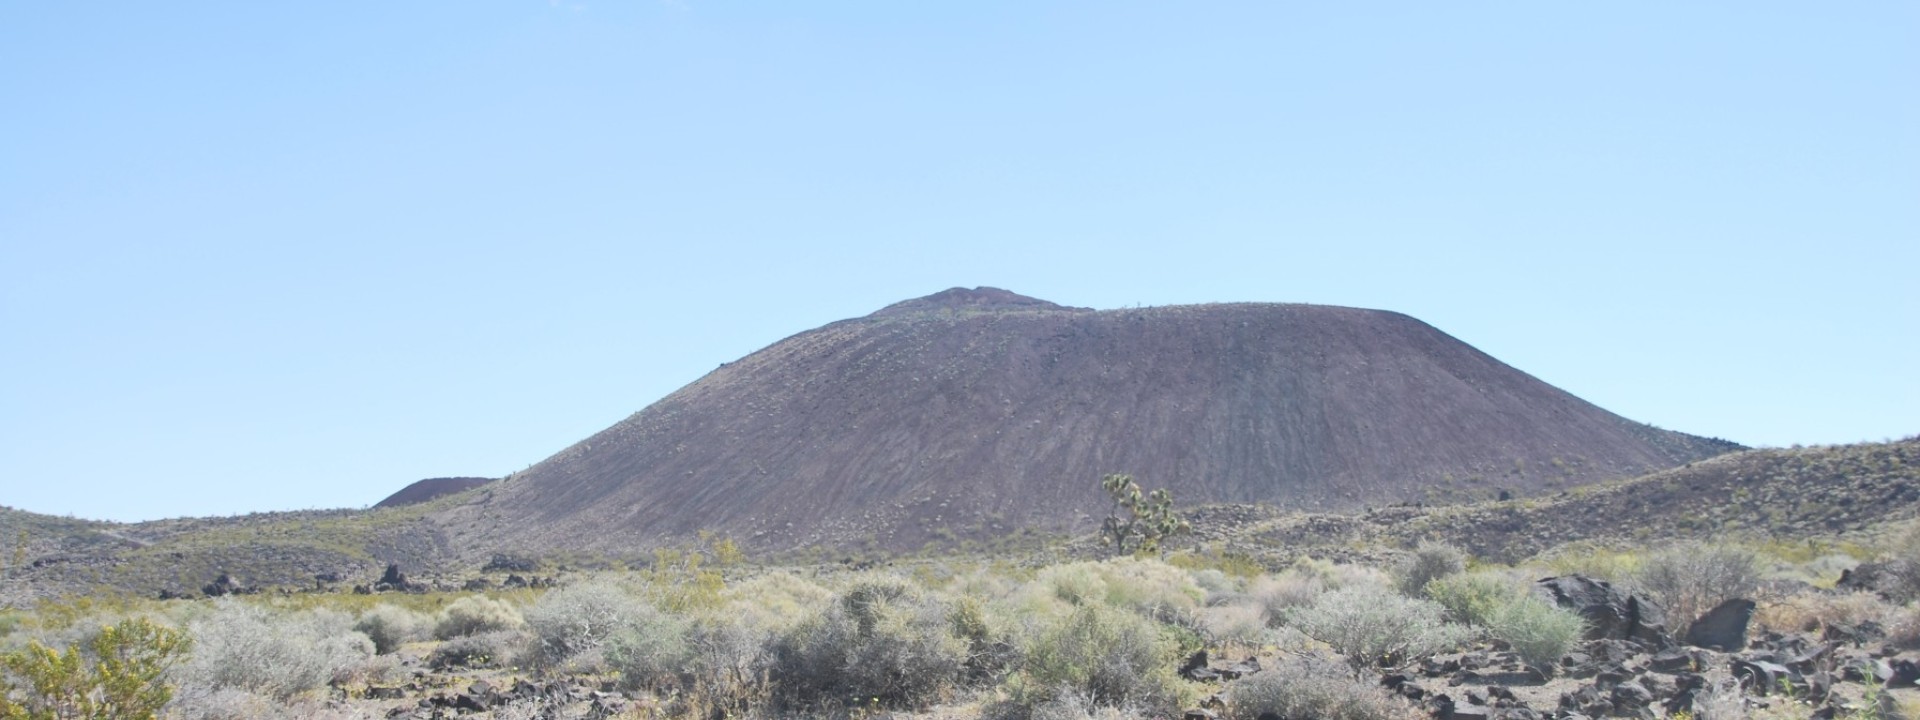 Mojave Desert volcano